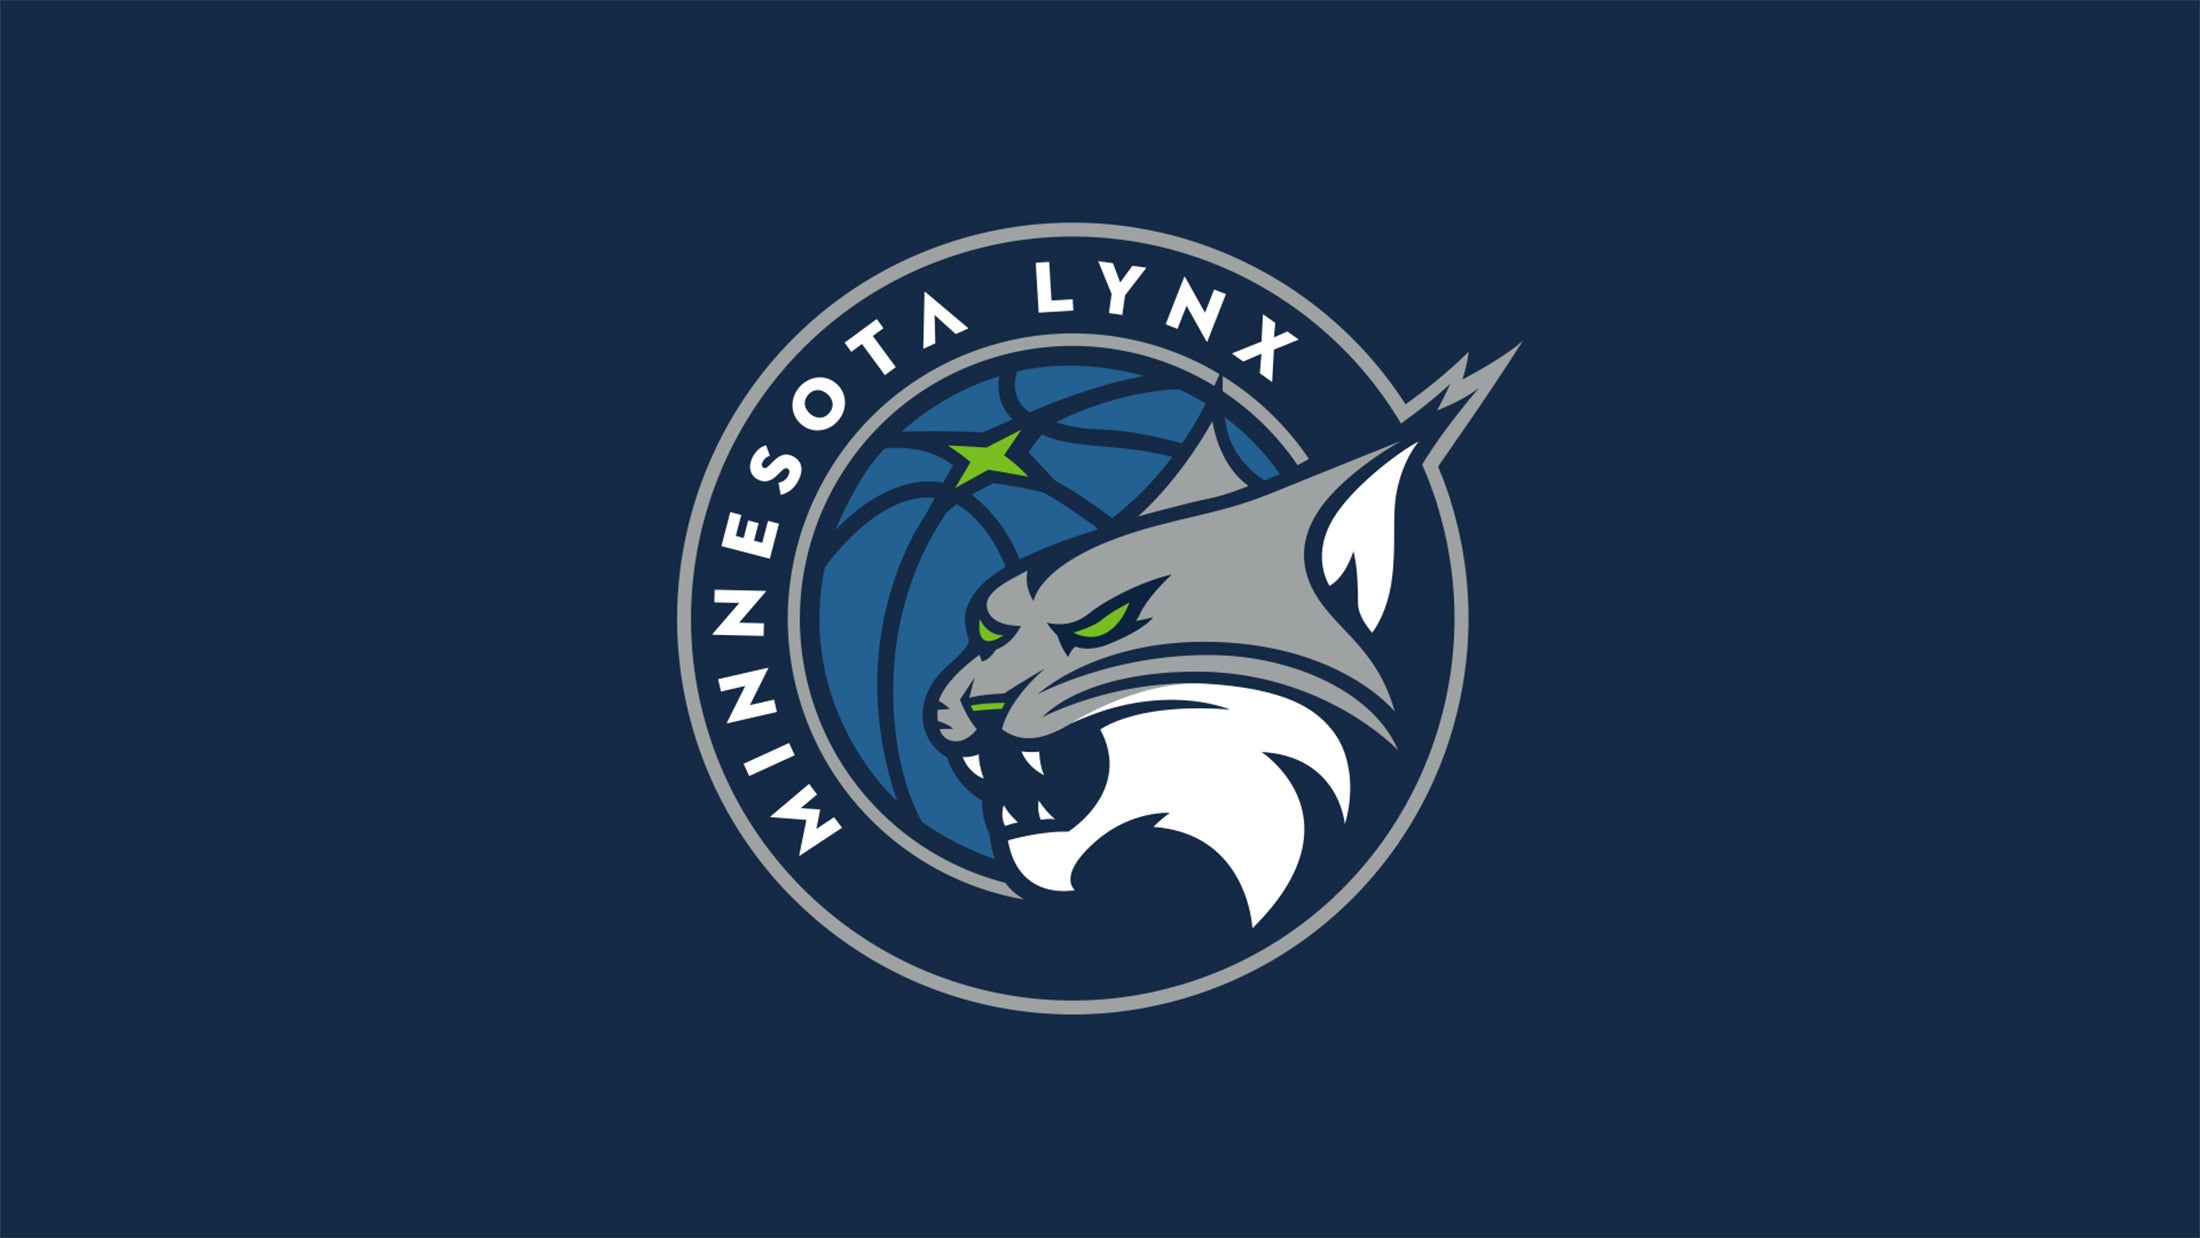 Minnesota Lynx vs. Chicago Sky at Target Center